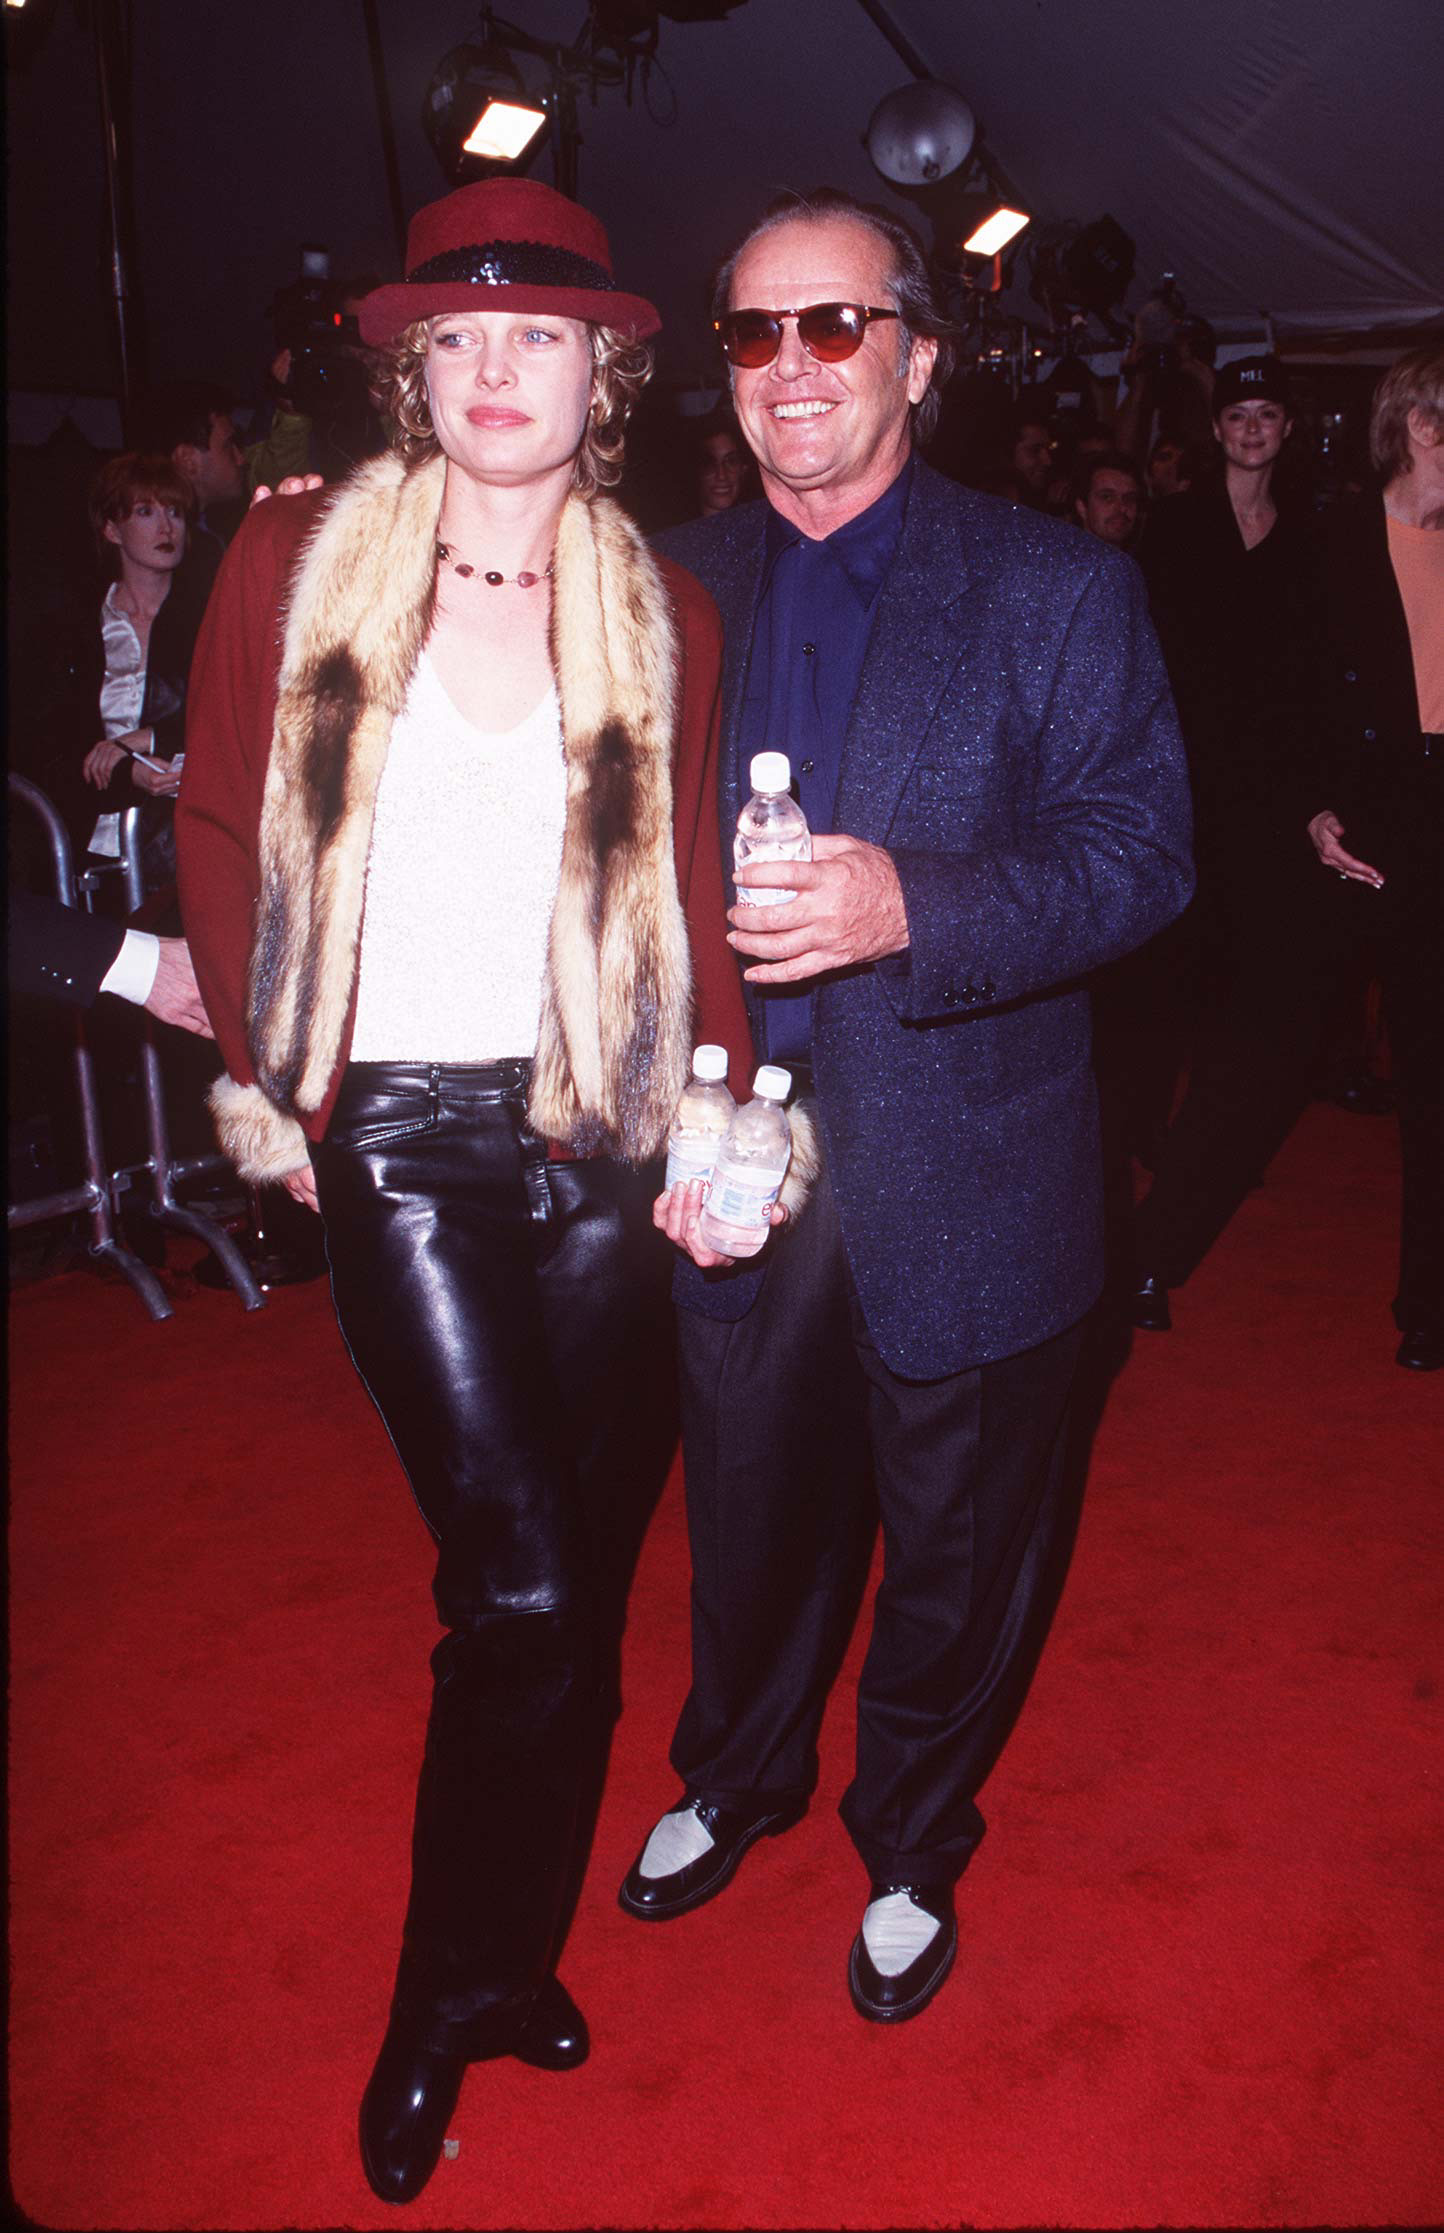 Rebecca Broussard und Jack Nicholson bei der Premiere von "As Good As It Gets" in Los Angeles 1997 | Quelle: Getty Images